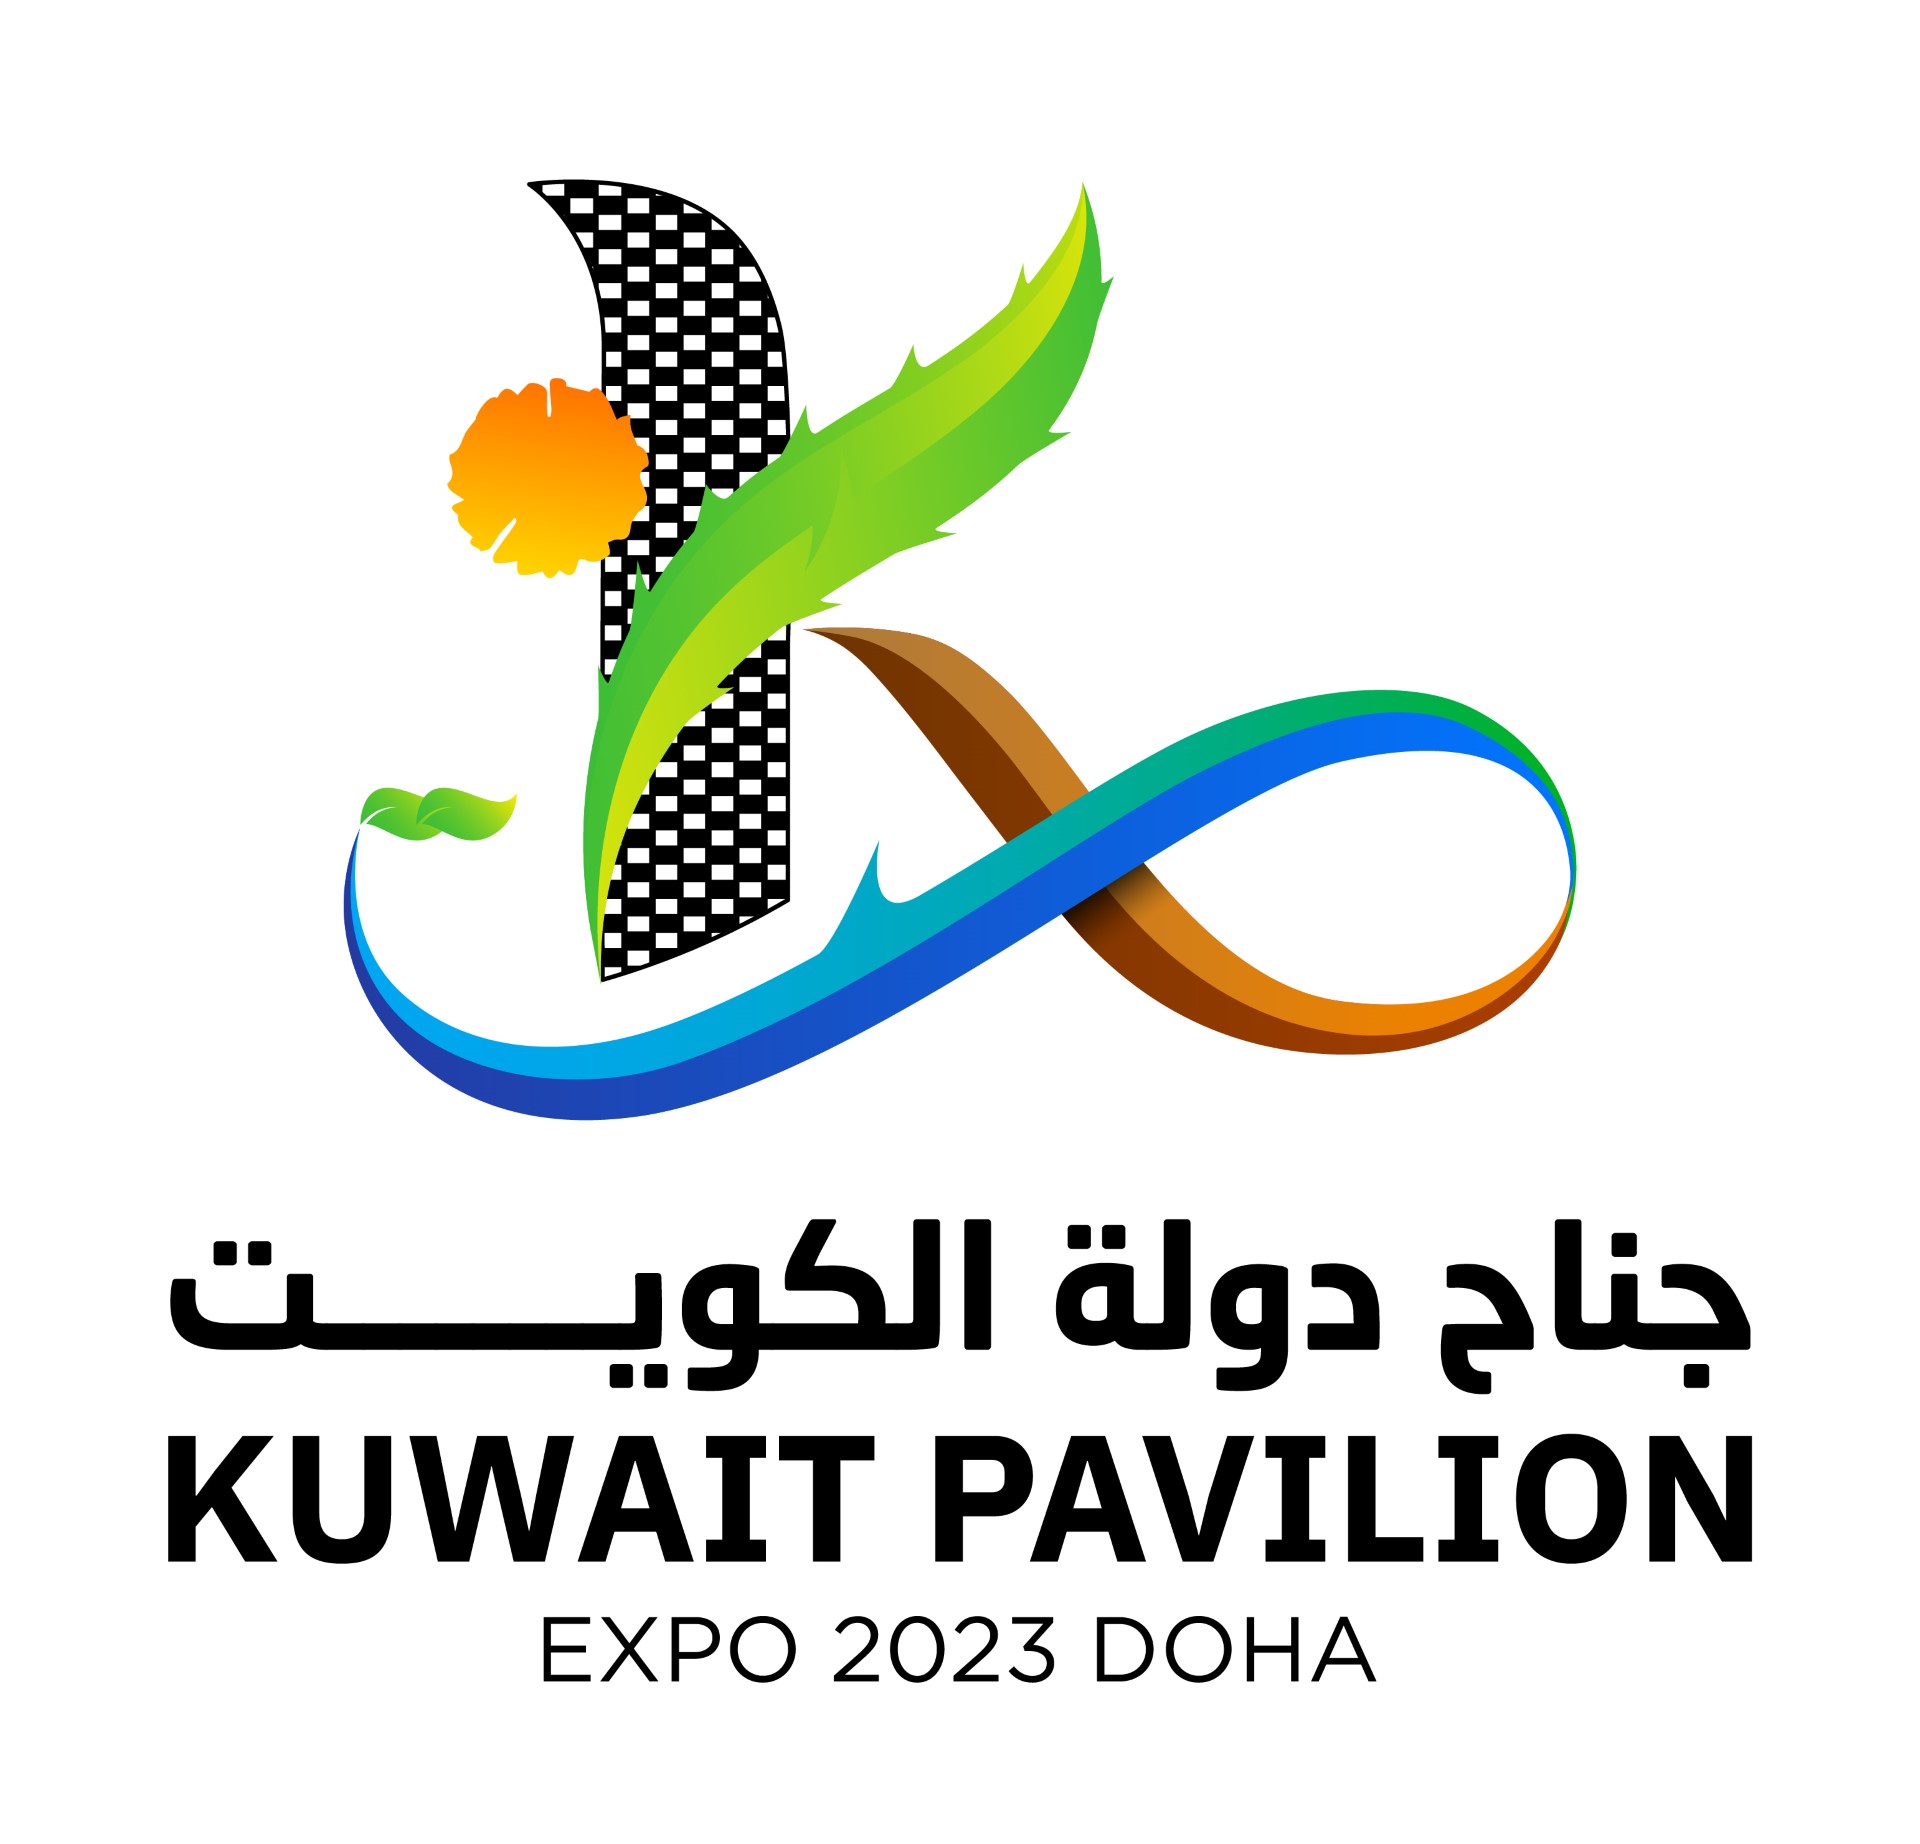 Kuwait displays its national flower Al-Arfaj at Qatar's Expo